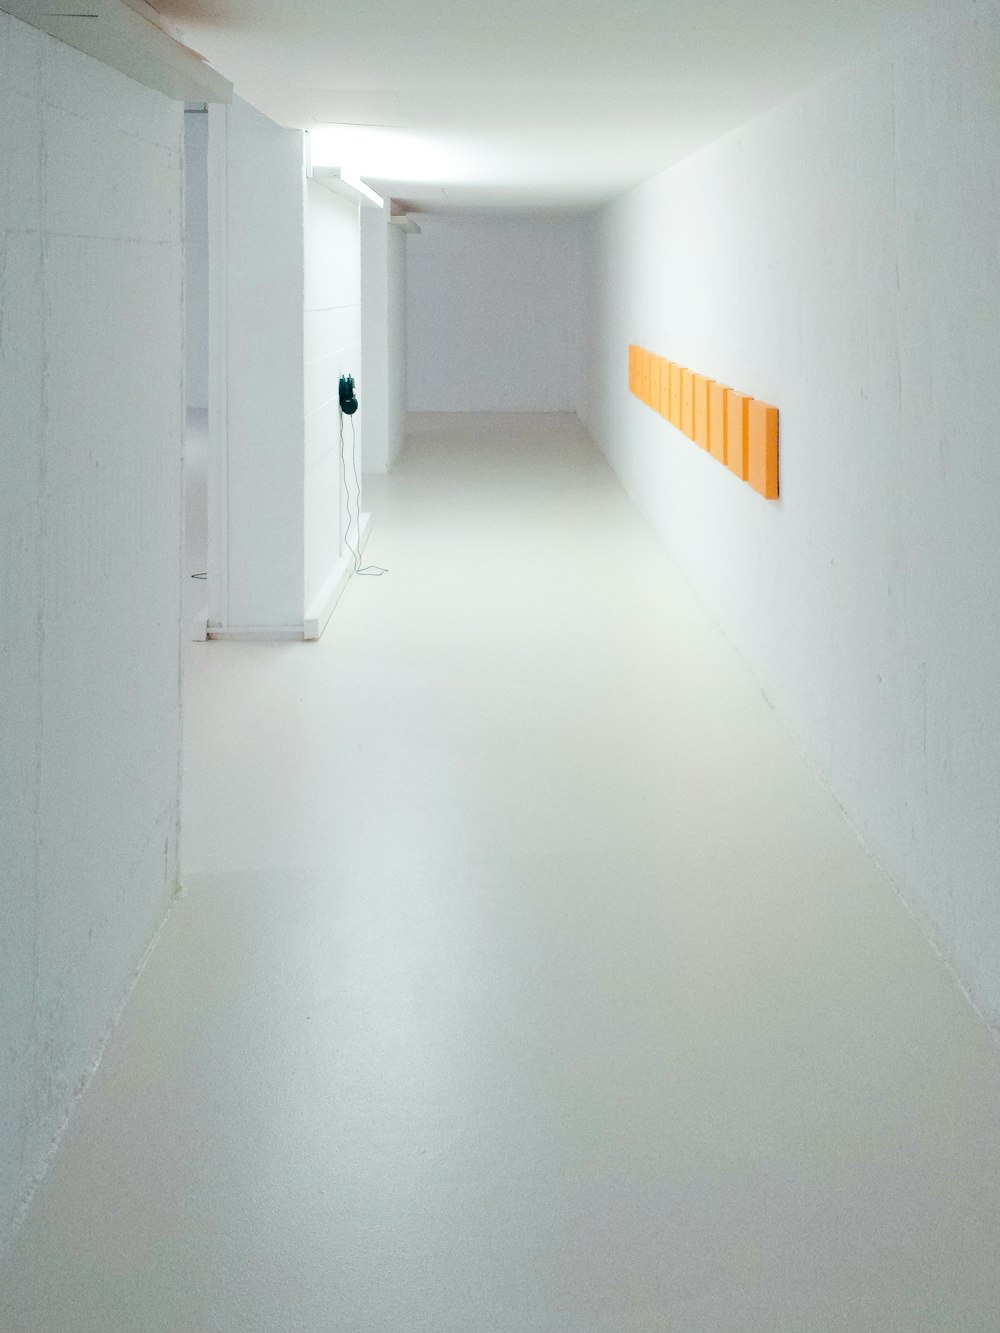 couloir vide entre des murs blancs